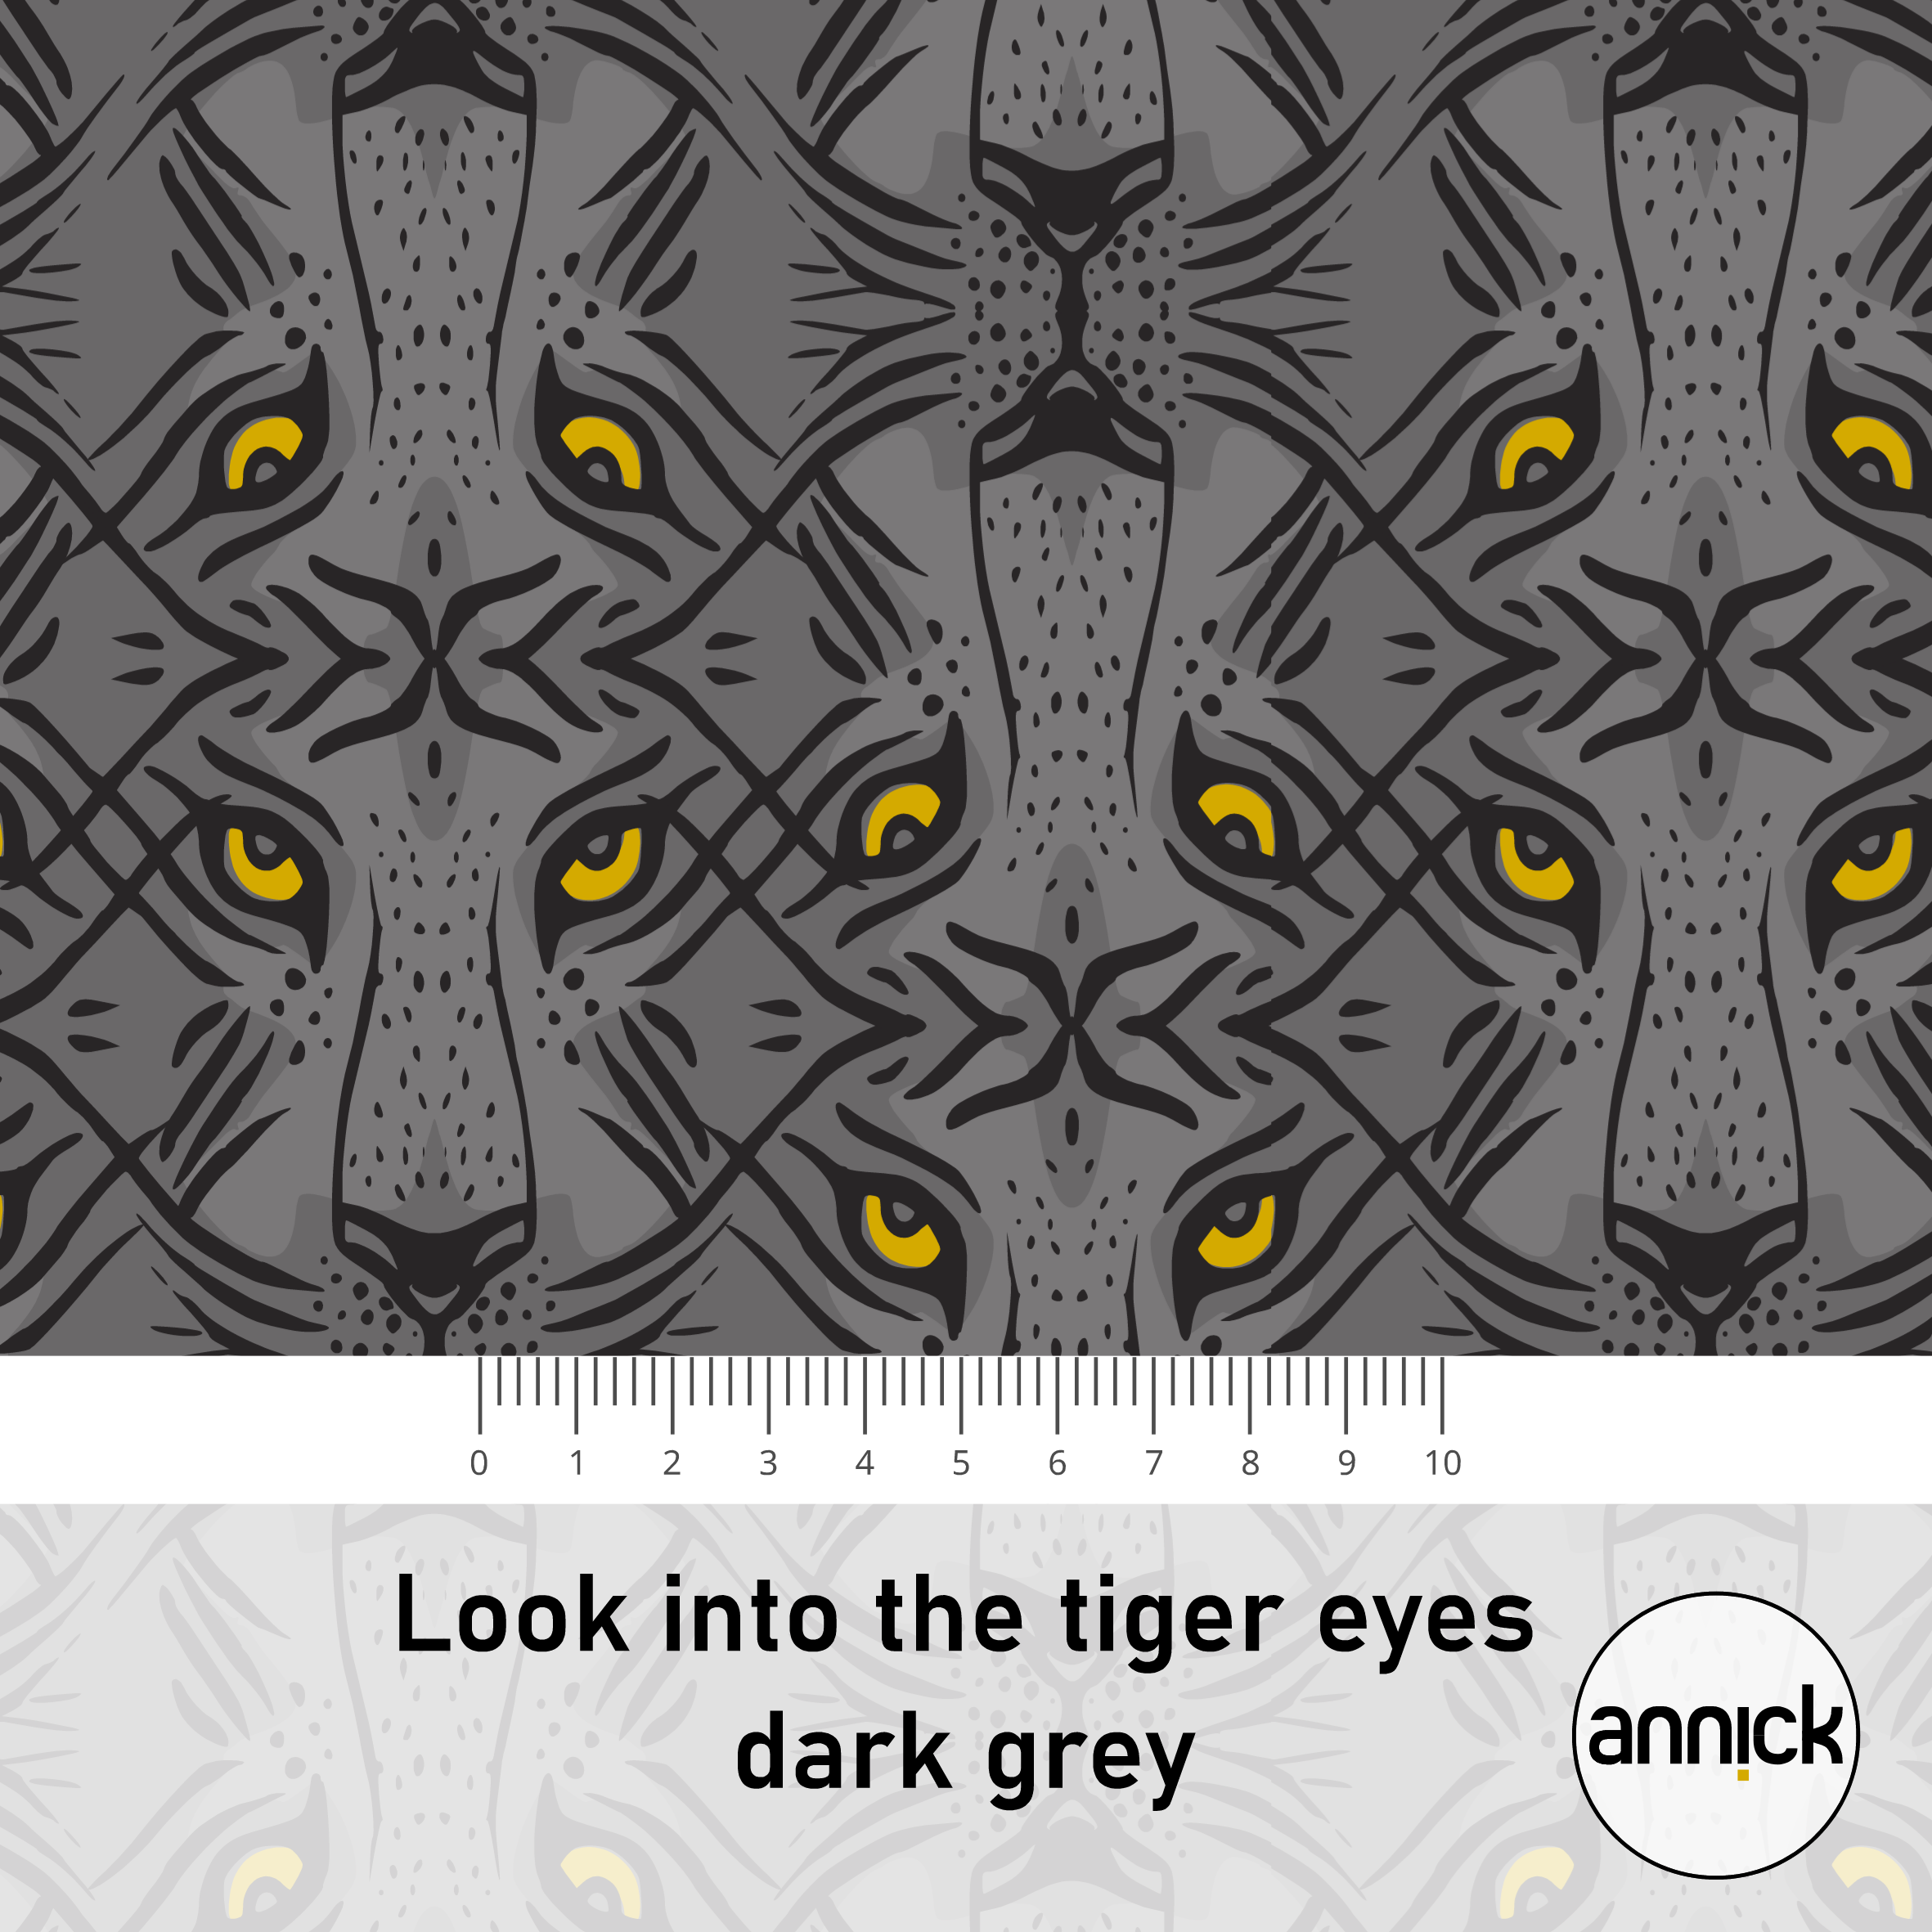 Look into the tiger eyes dark grey